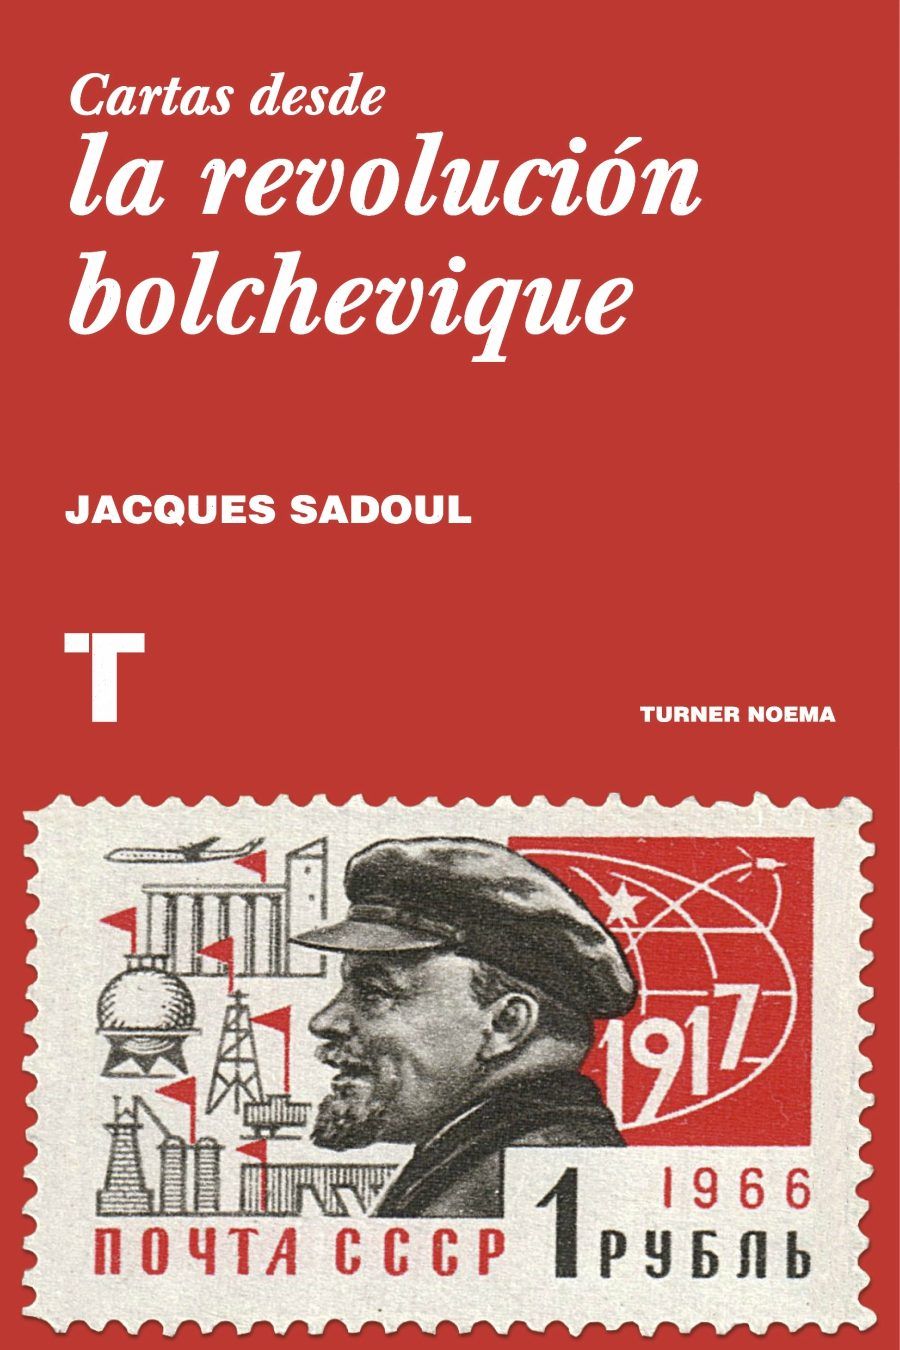 Cartas desde la revolución bolchevique. Jacques Sadoul.